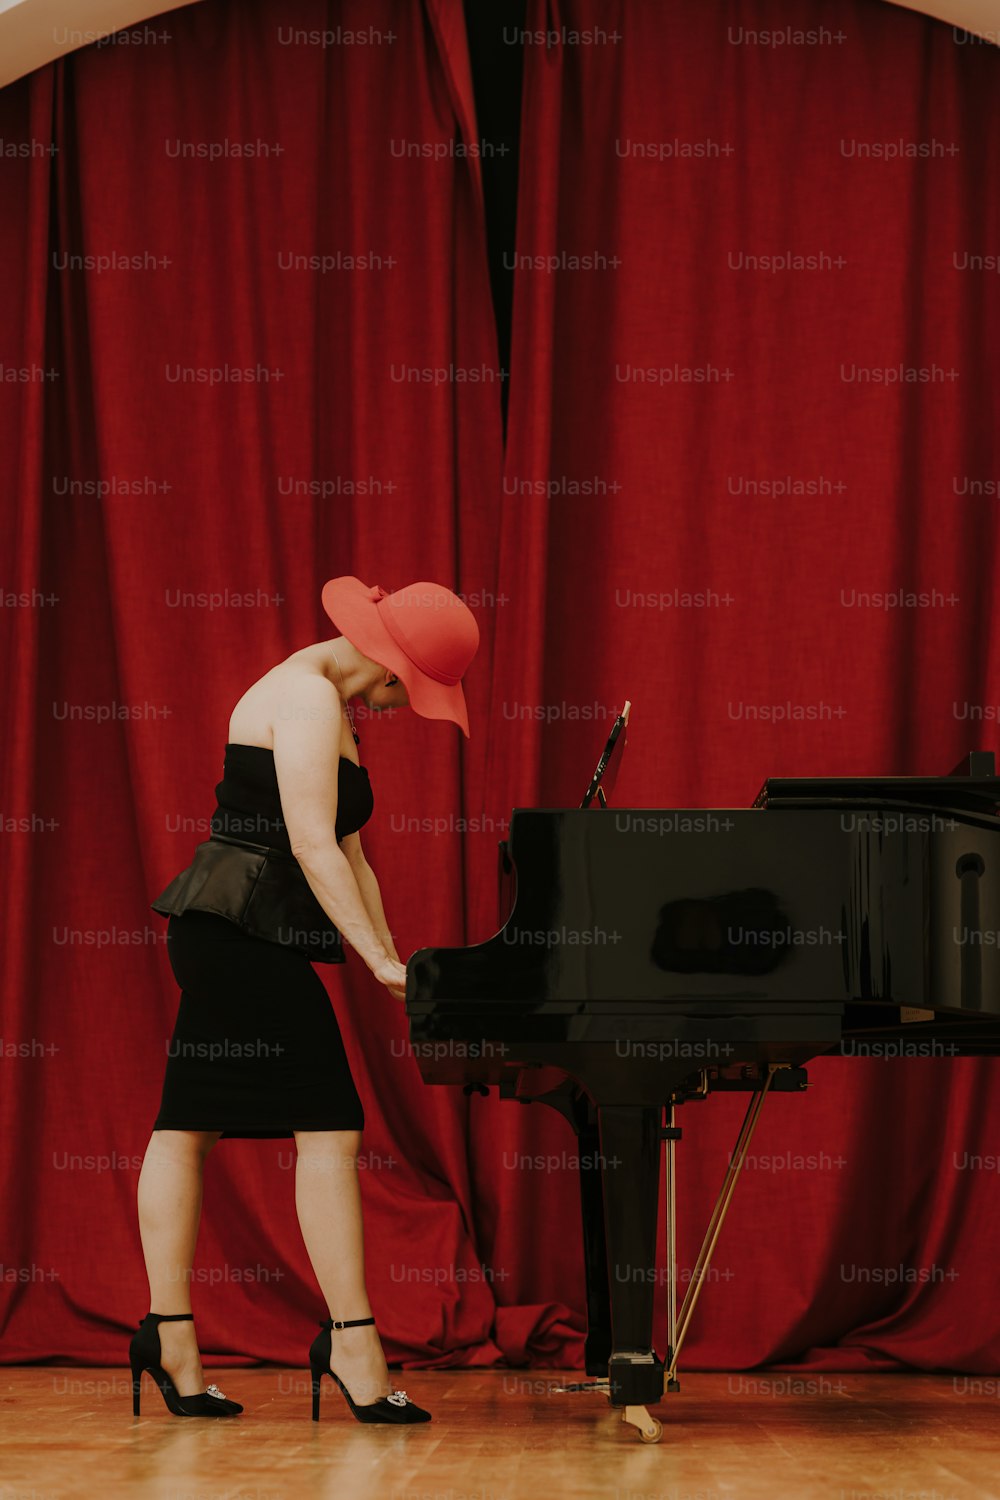 검은 드레스를 입은 여자가 피아노를 치��고 있다